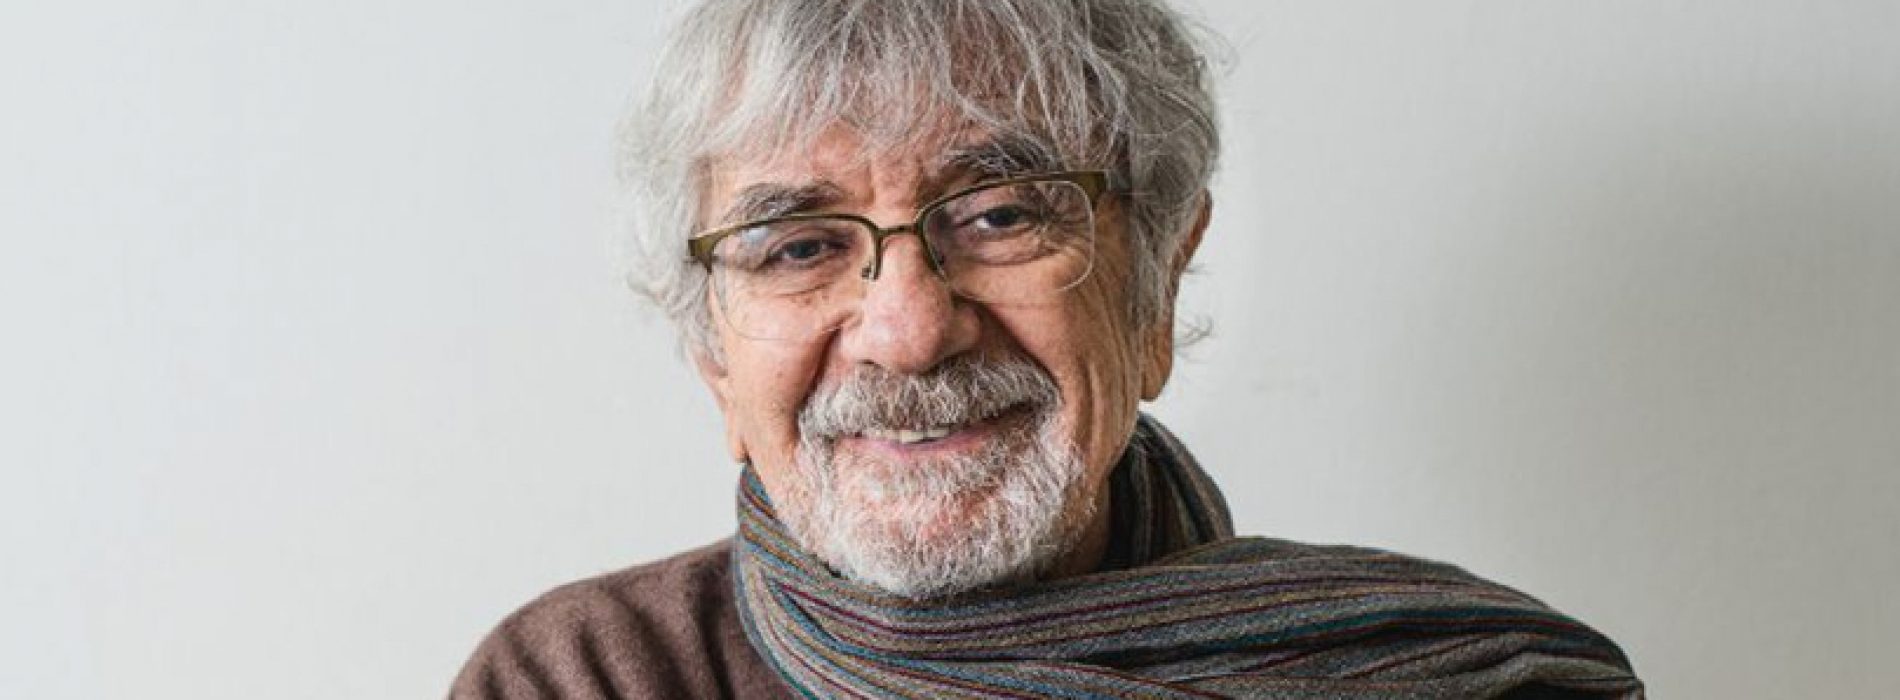 A los 92 años muere el destacado biólogo y escritor chileno Humberto Maturana